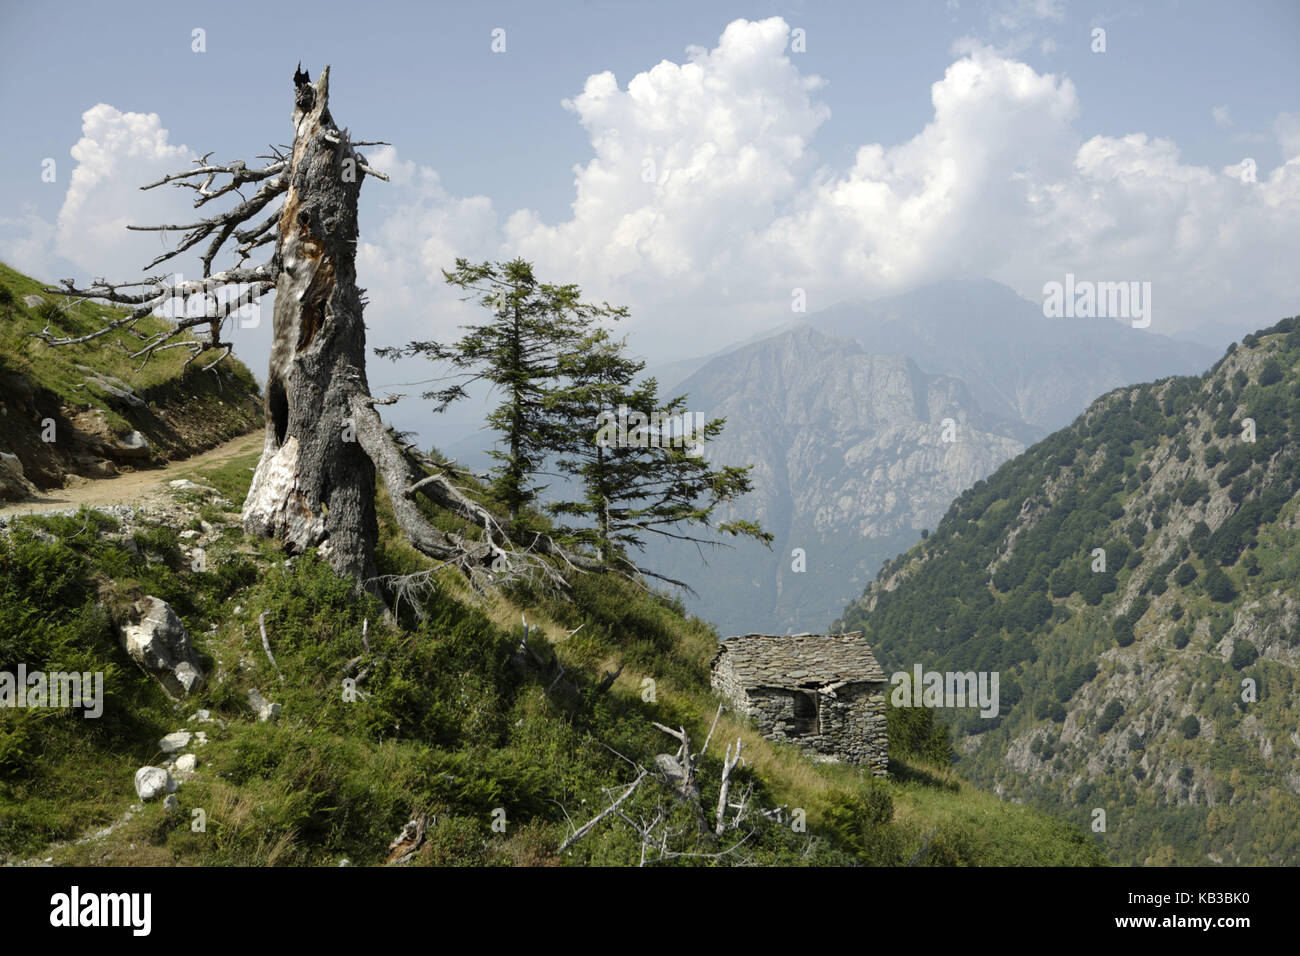 Mountain landscape, dead tree, hut, Sondrio, Lombardy, Italy, Stock Photo